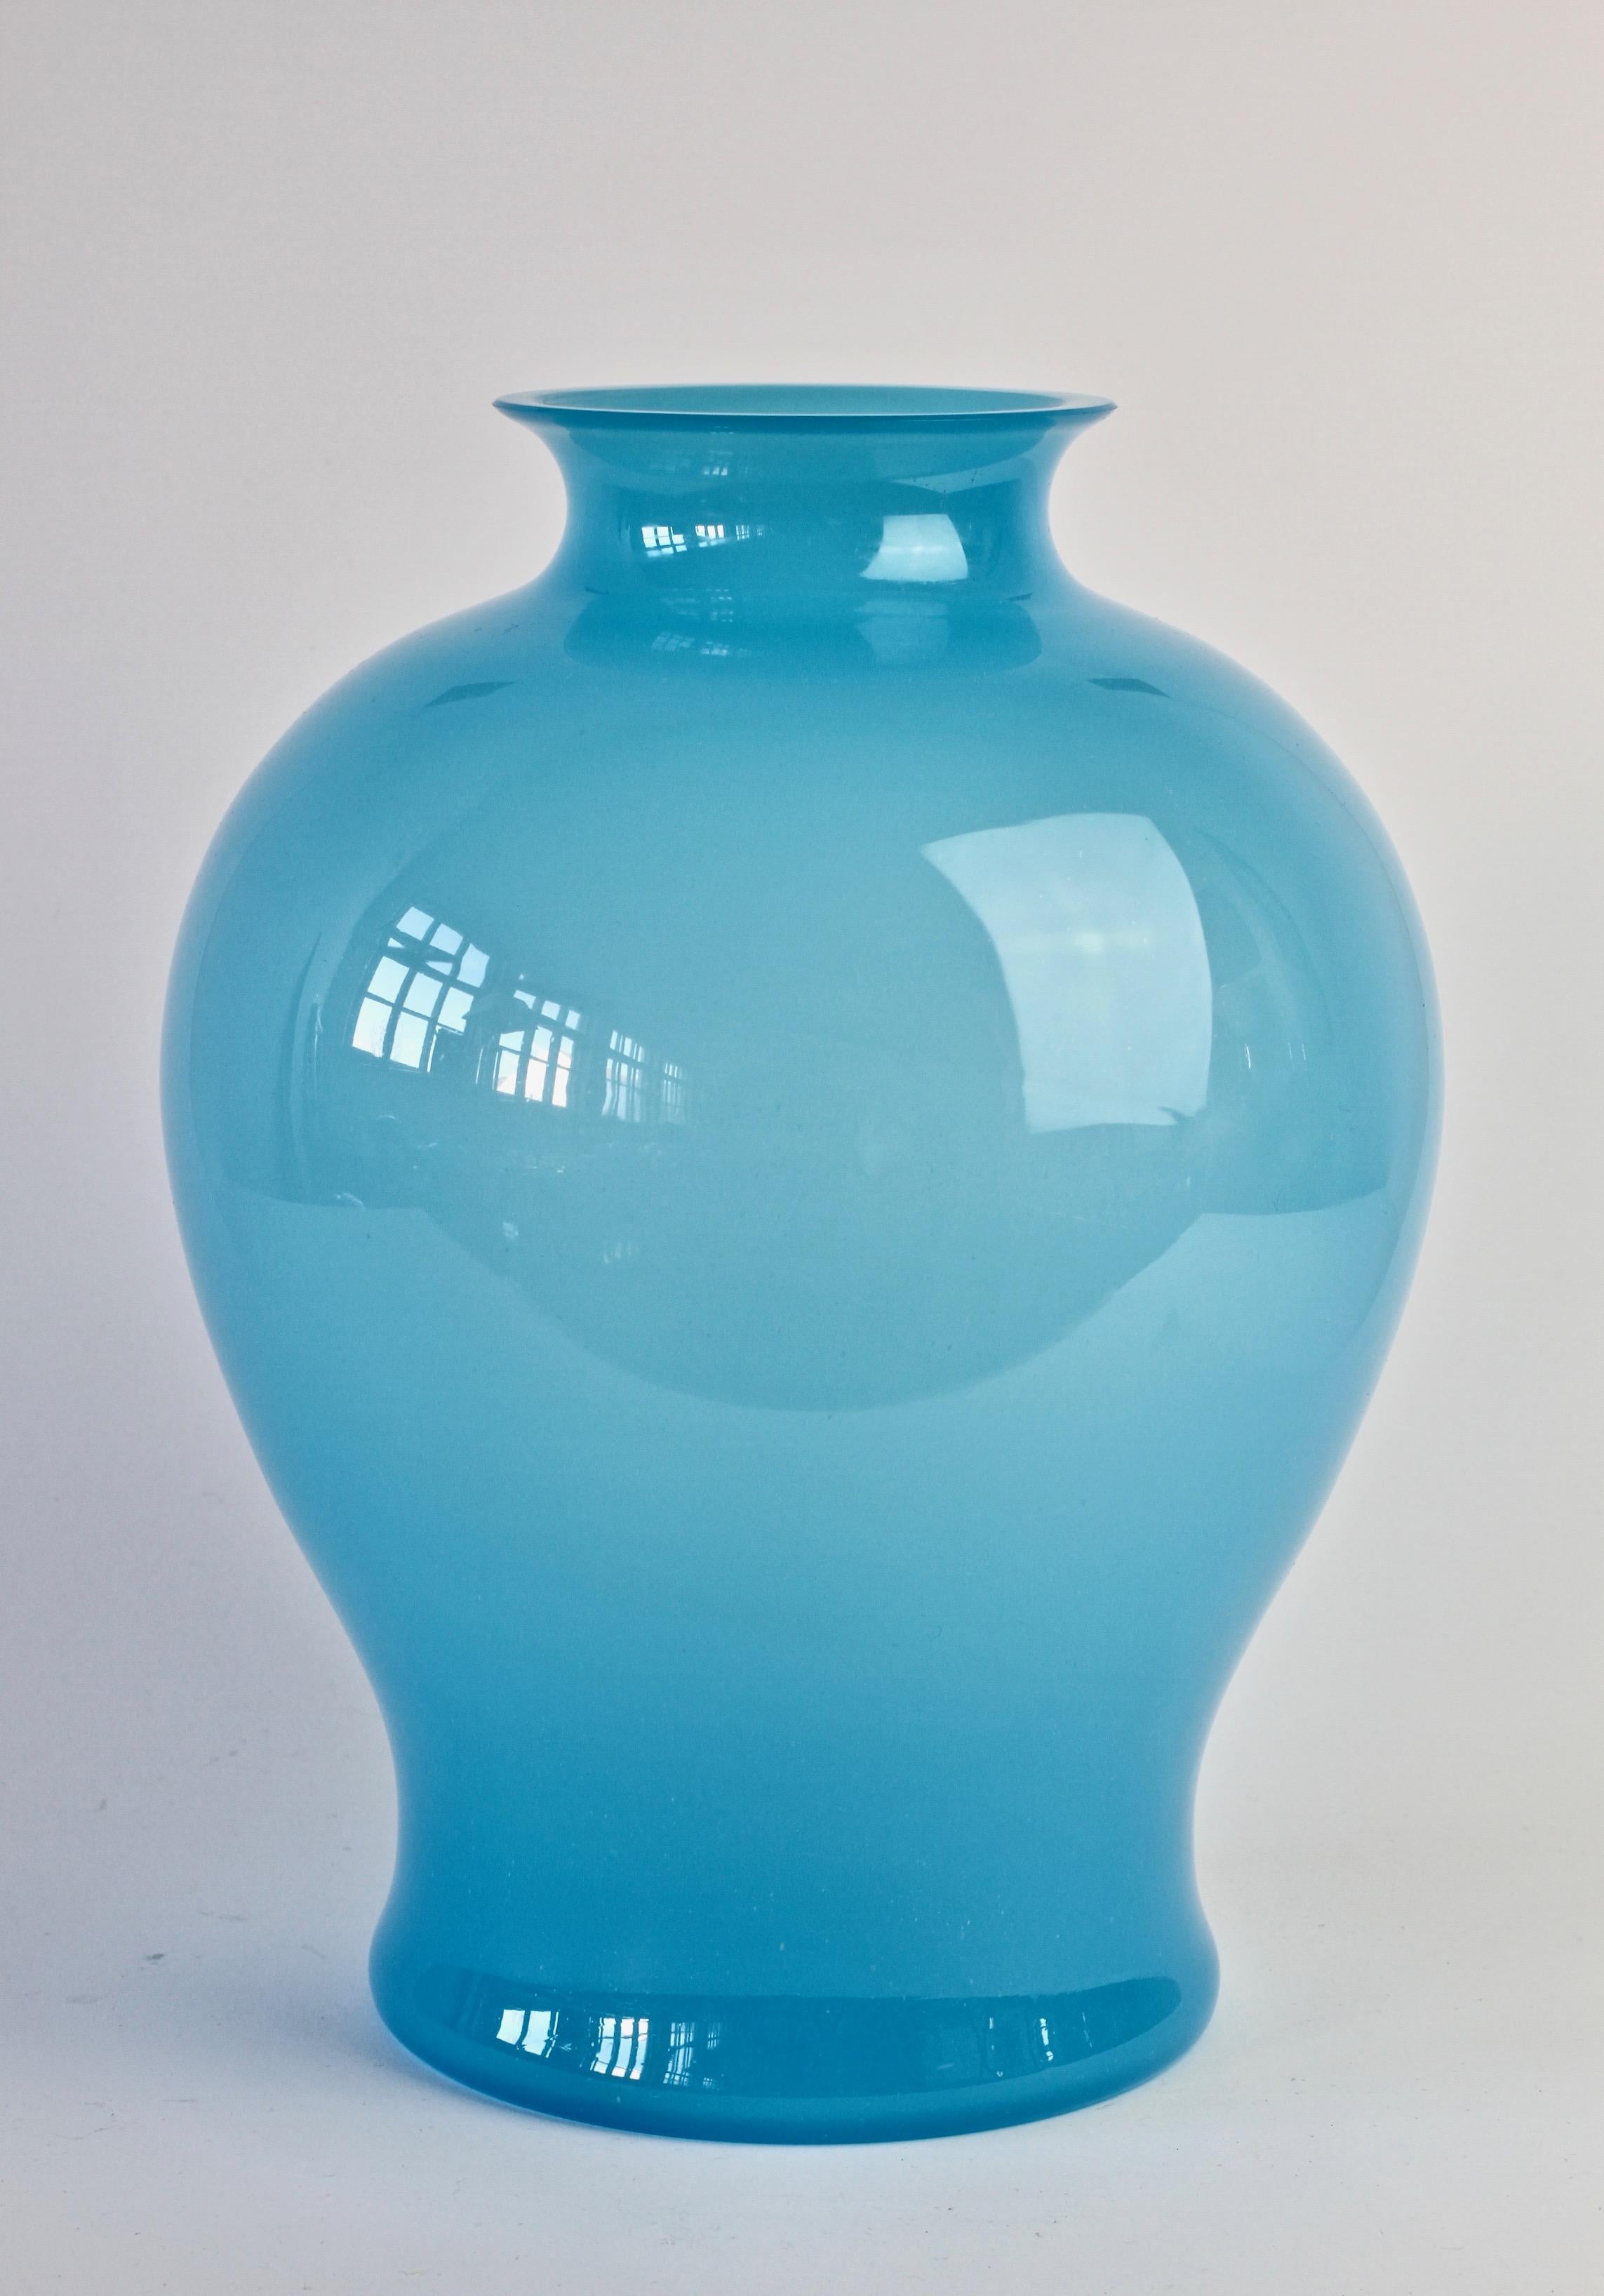 Grand vase central vintage du milieu du siècle par Cenedese Vetri de Murano, Italie. La forme élégante et la couleur bleu clair sont particulièrement frappantes. Un navire rare, surtout dans cette taille.

Les dimensions sont les suivantes : 30 cm